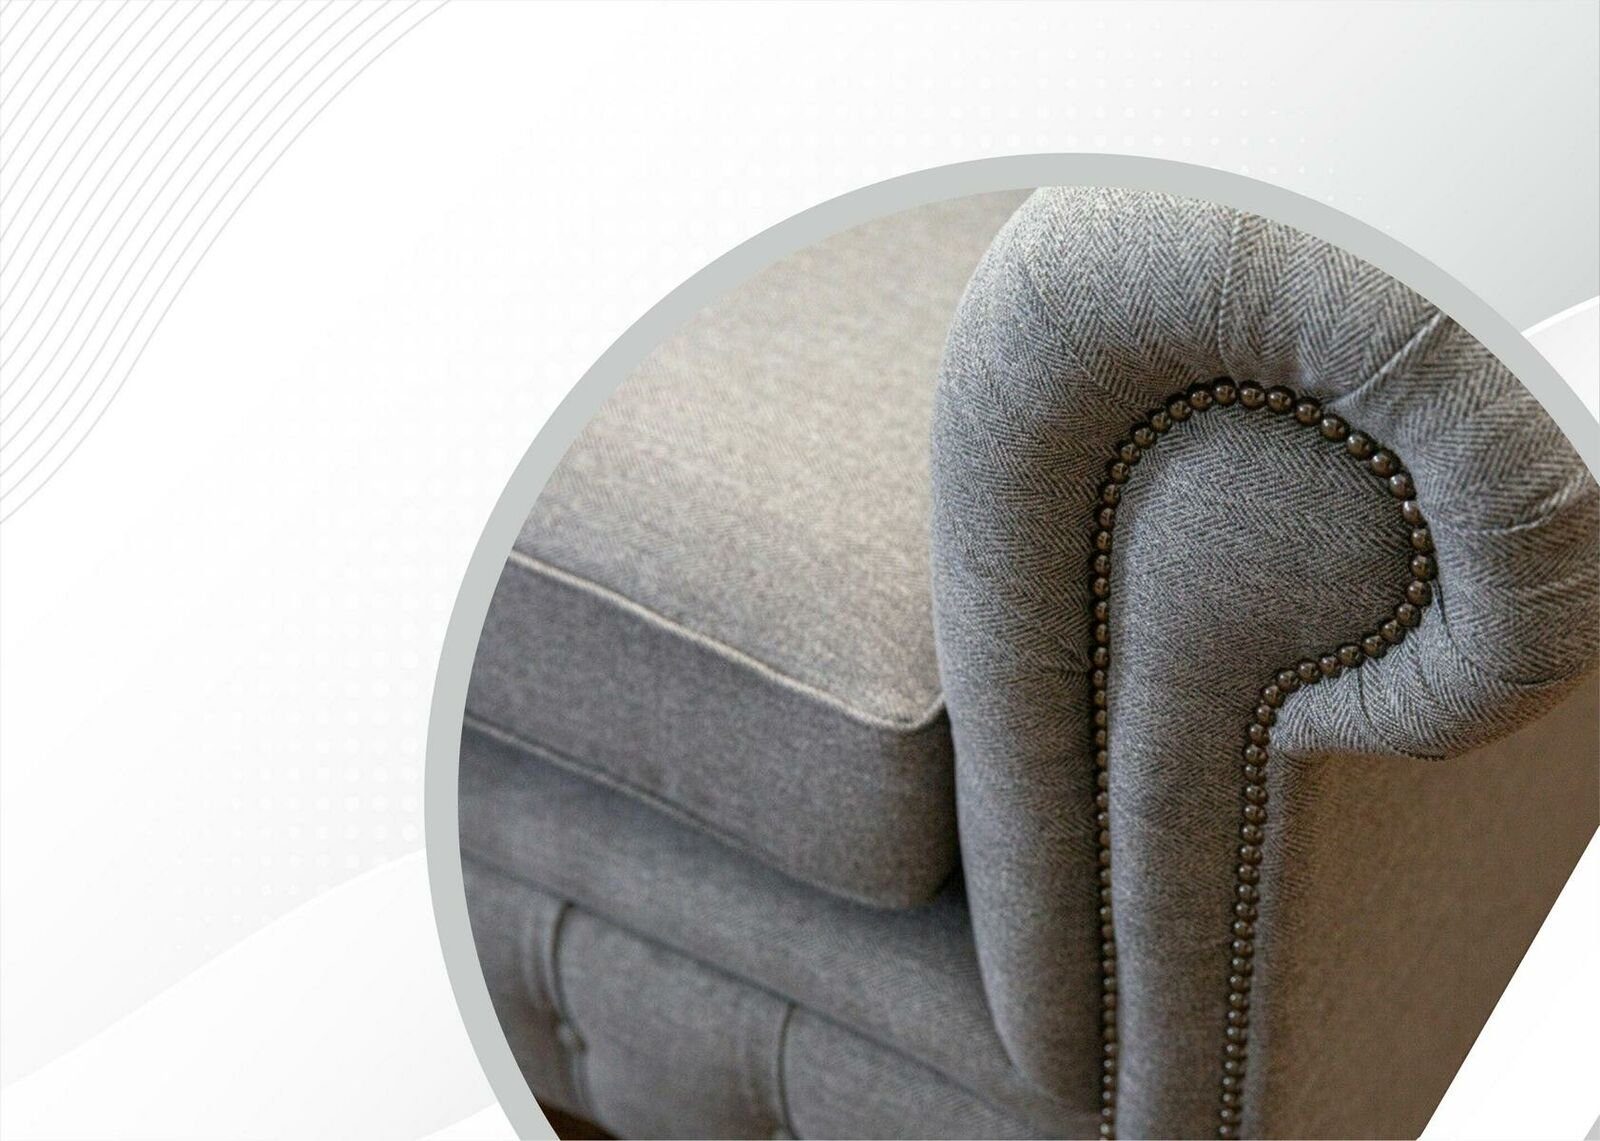 Design 2 JVmoebel Sitzer Sofa Stoff Chesterfield Chesterfield-Sofa, Polster Wohnzimmer Hellgrau Sofas Textil